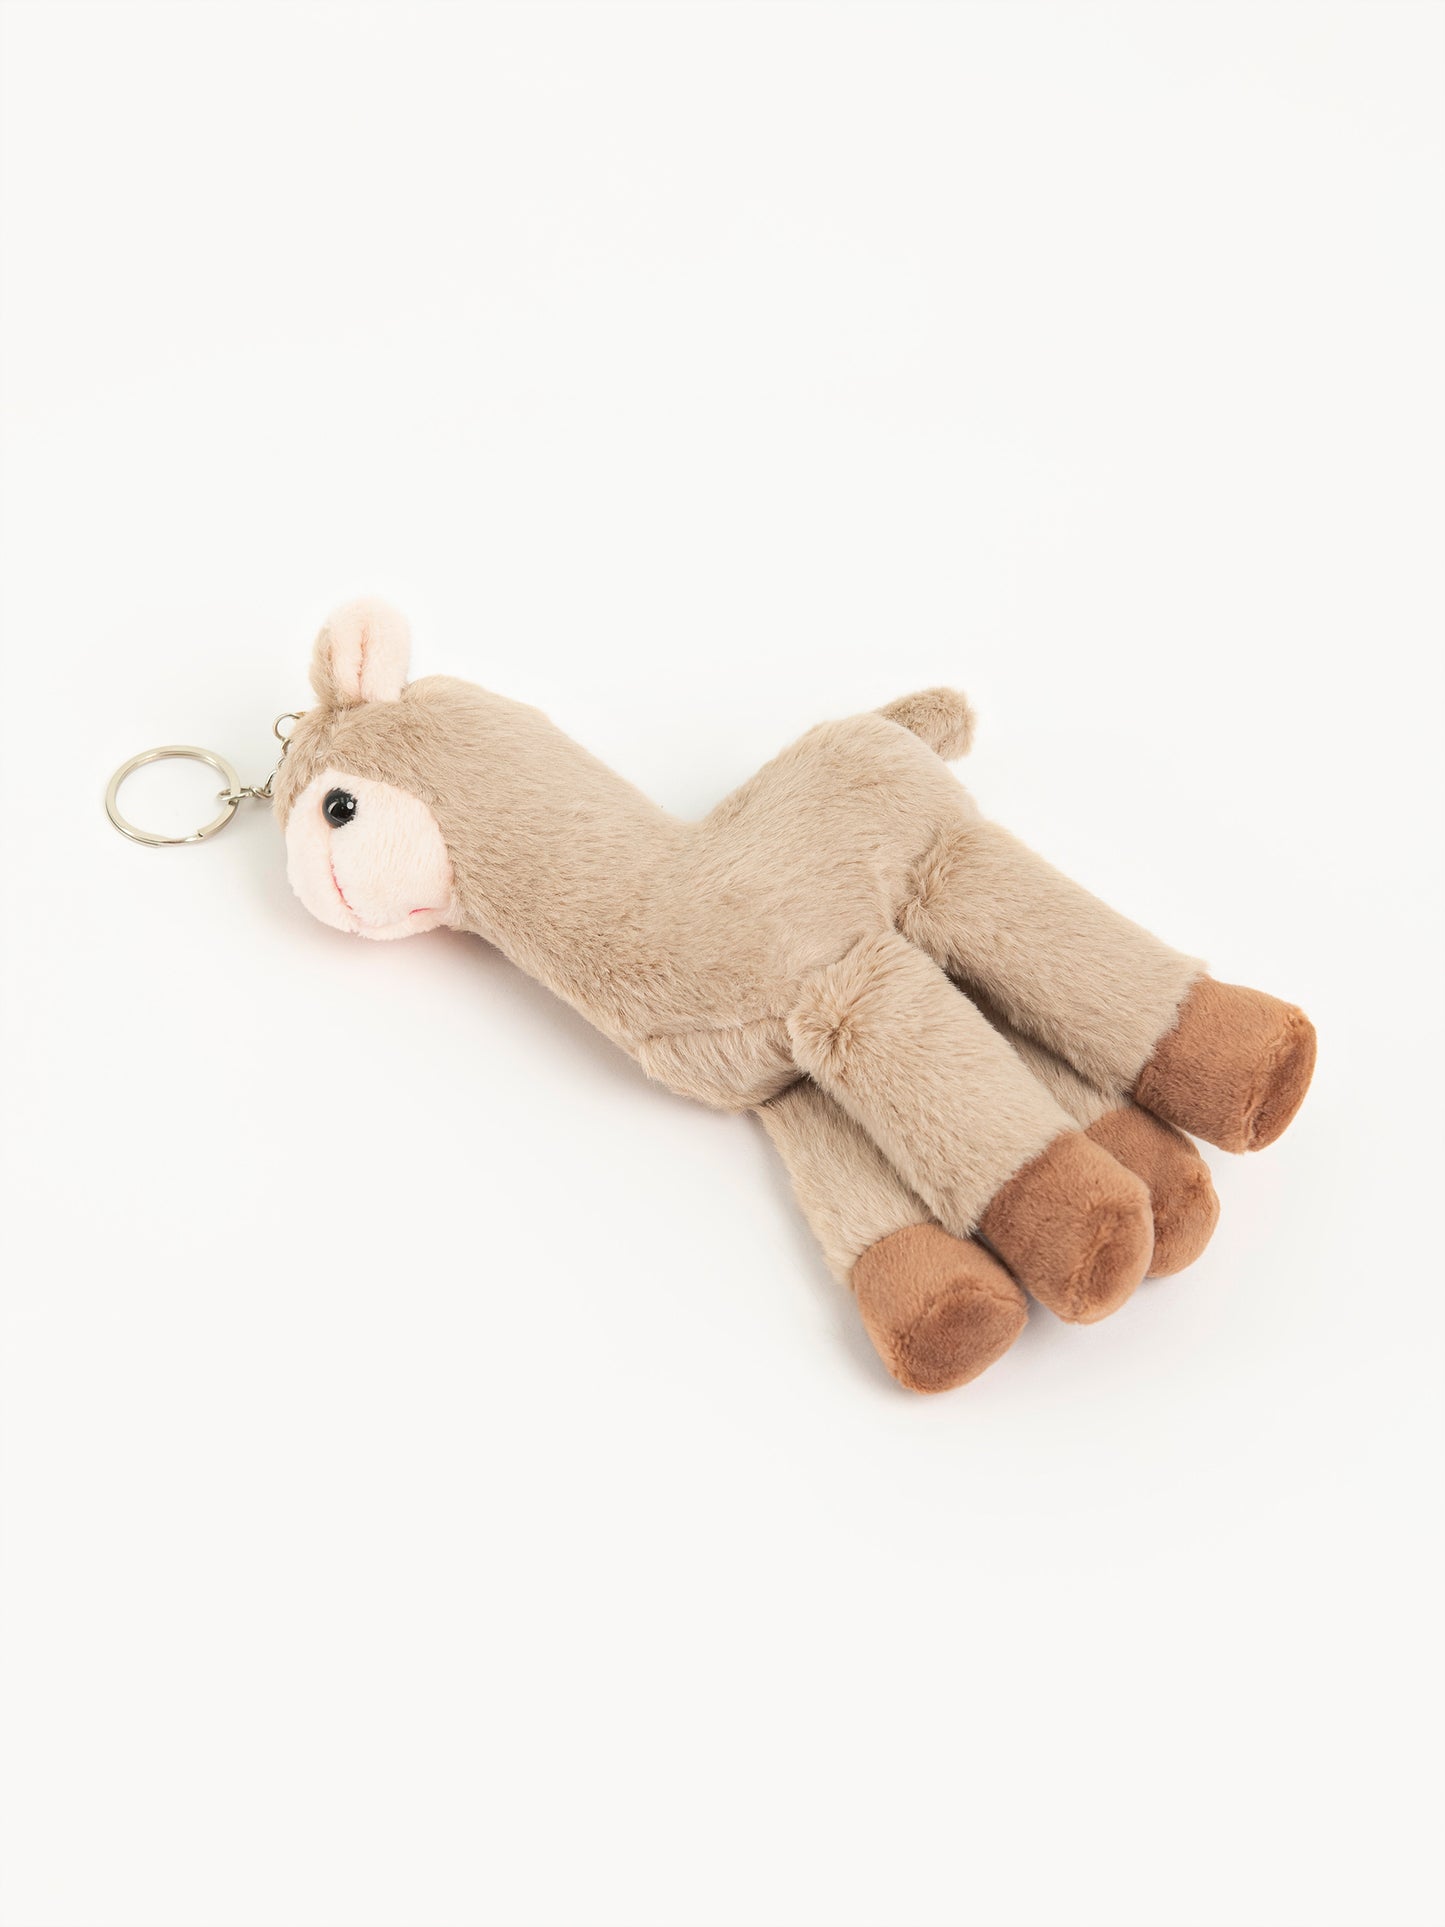 Llama Stuffed Toy Keychain